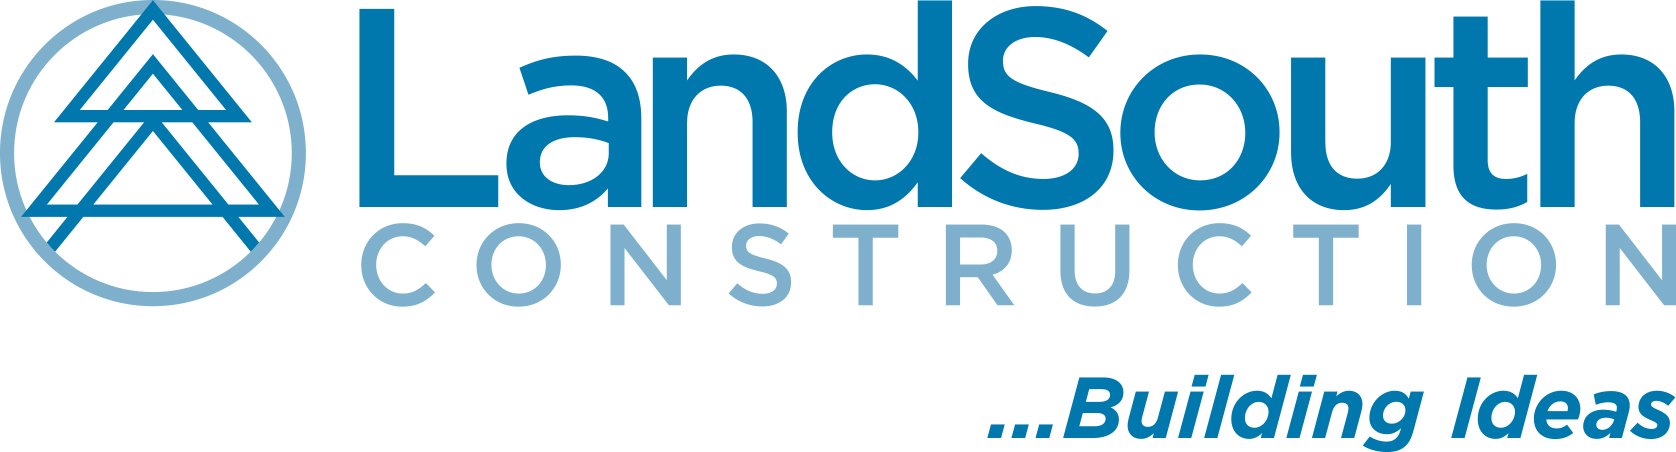 landsouth-logo-2color-tagline.jpg